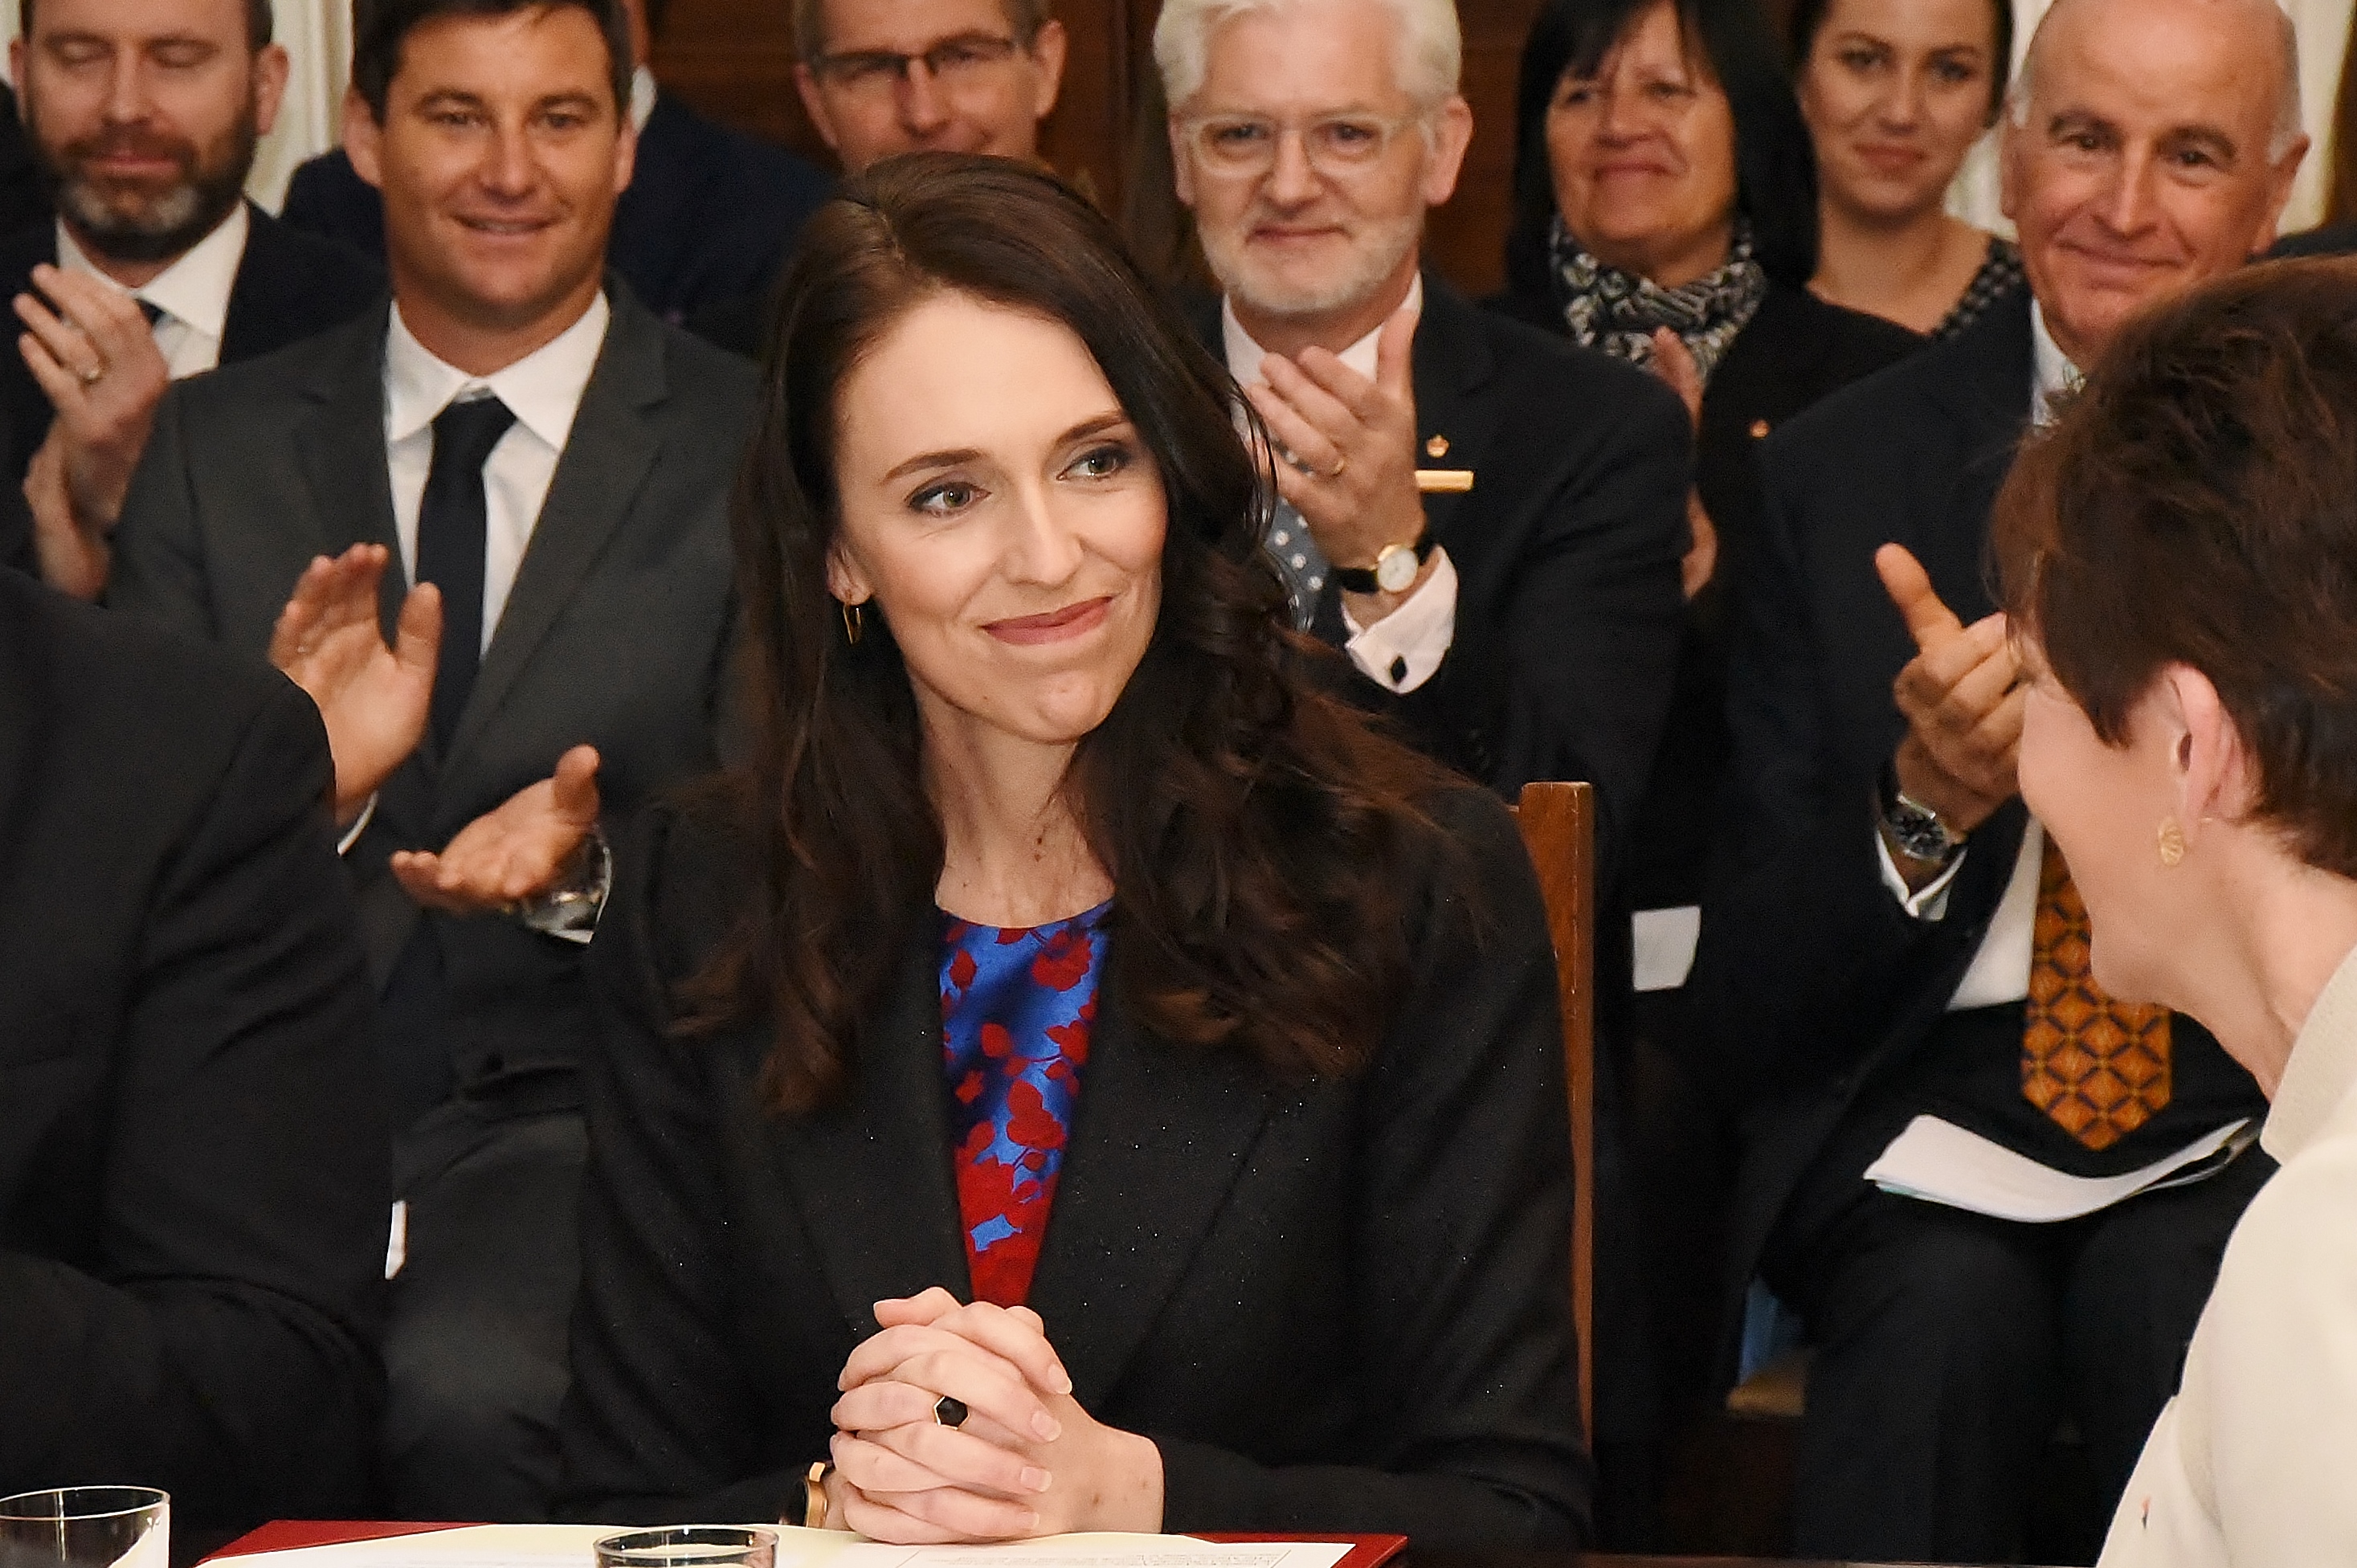 Прем'єр-міністерка Нової Зеландії стала першою жінкою, яка прийшла на ассамблею ООН із немовлям